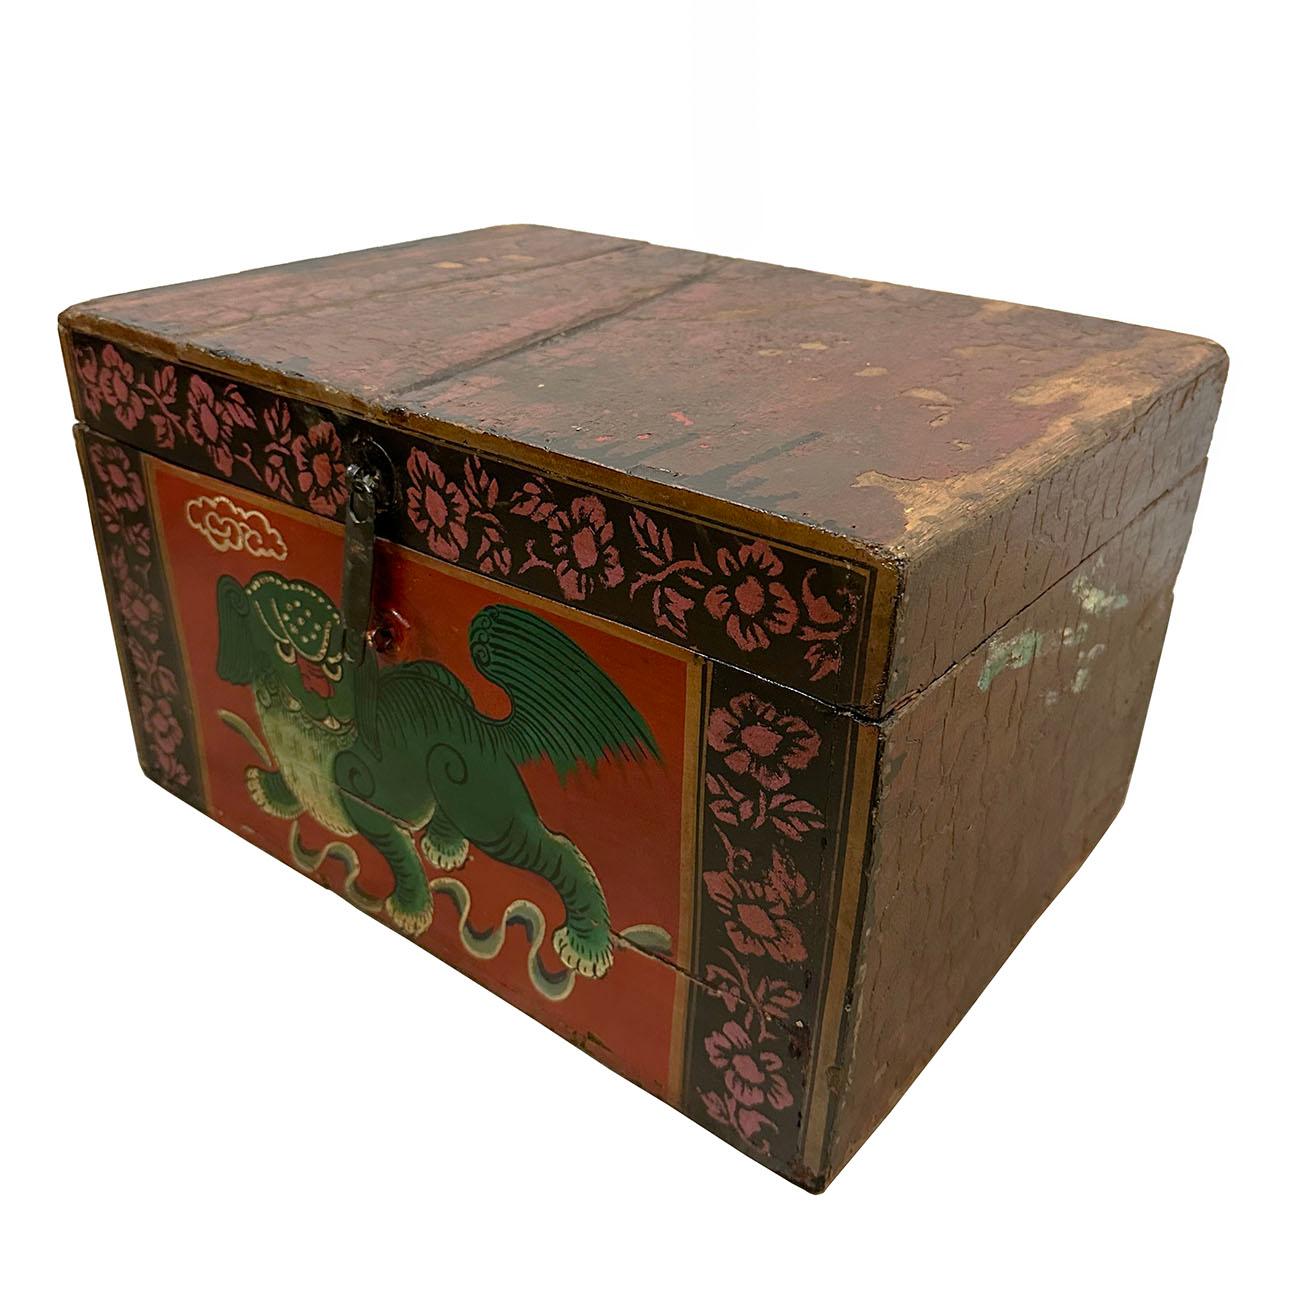 Il s'agit d'un coffre ancien peint de style traditionnel chinois provenant de Shan Xi, en Chine. Son histoire remonte à plus de 100 ans. Normalement, il était utilisé pour stocker des articles de couture, etc. Il s'ouvre sur le dessus à l'aide de